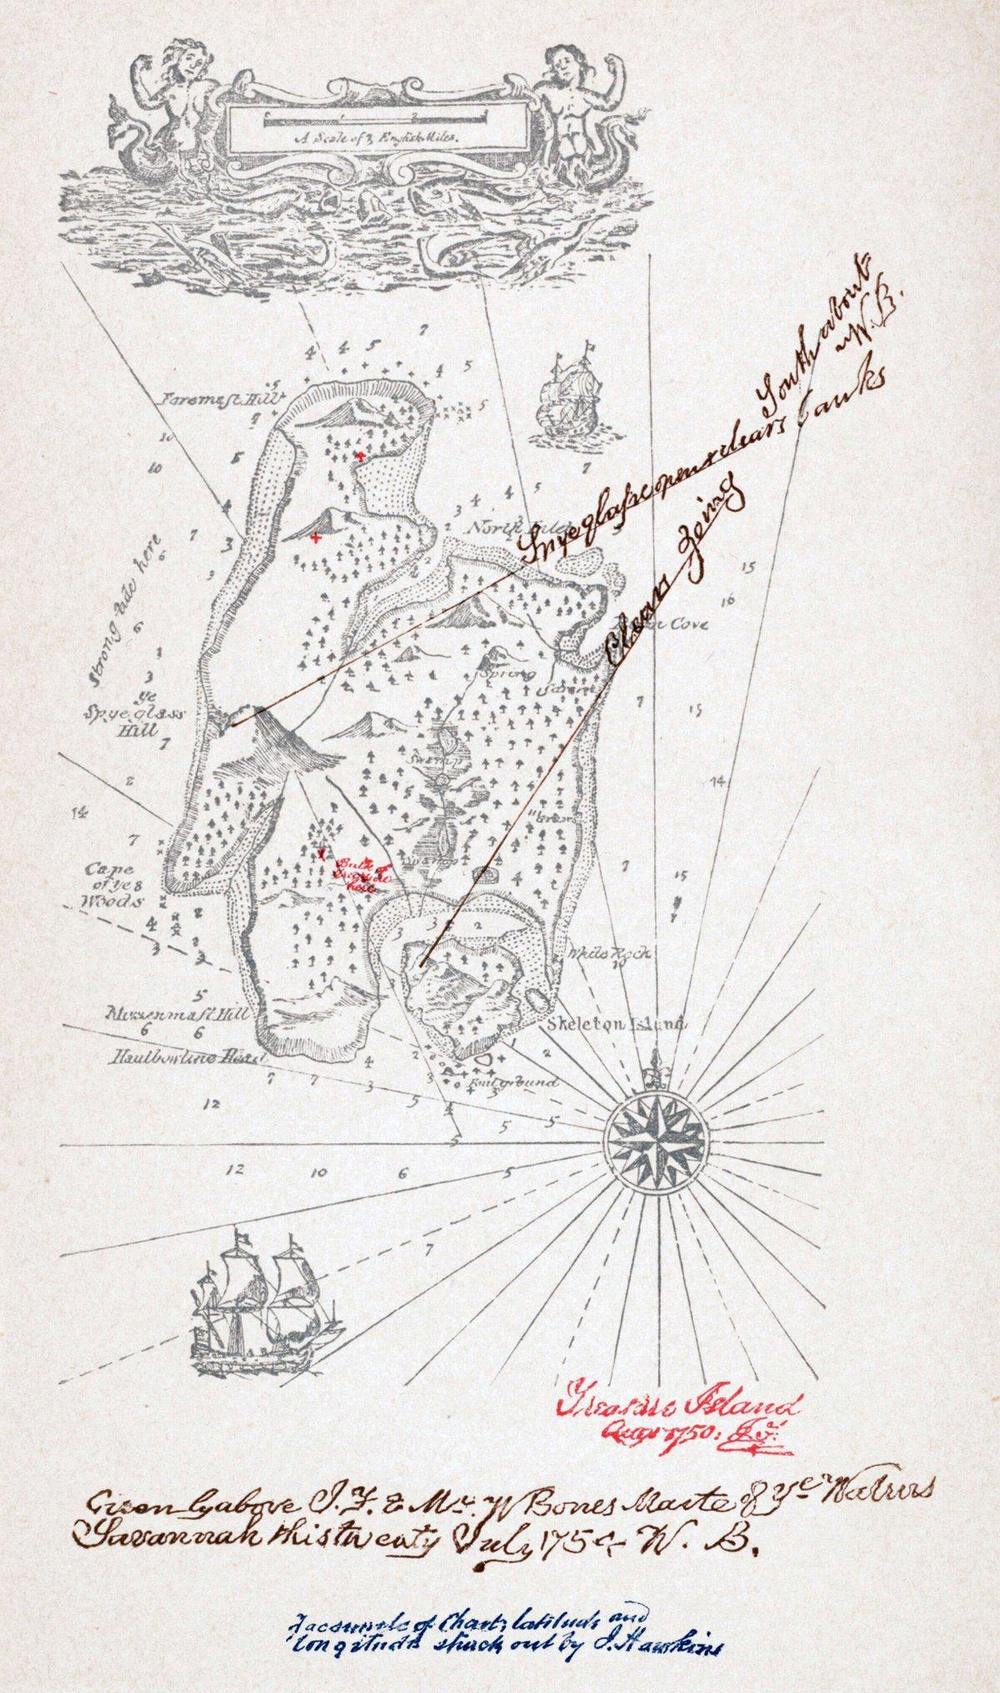 Mapa del tesoro de R.L. Stevenson, intentando reproducir el mapa original